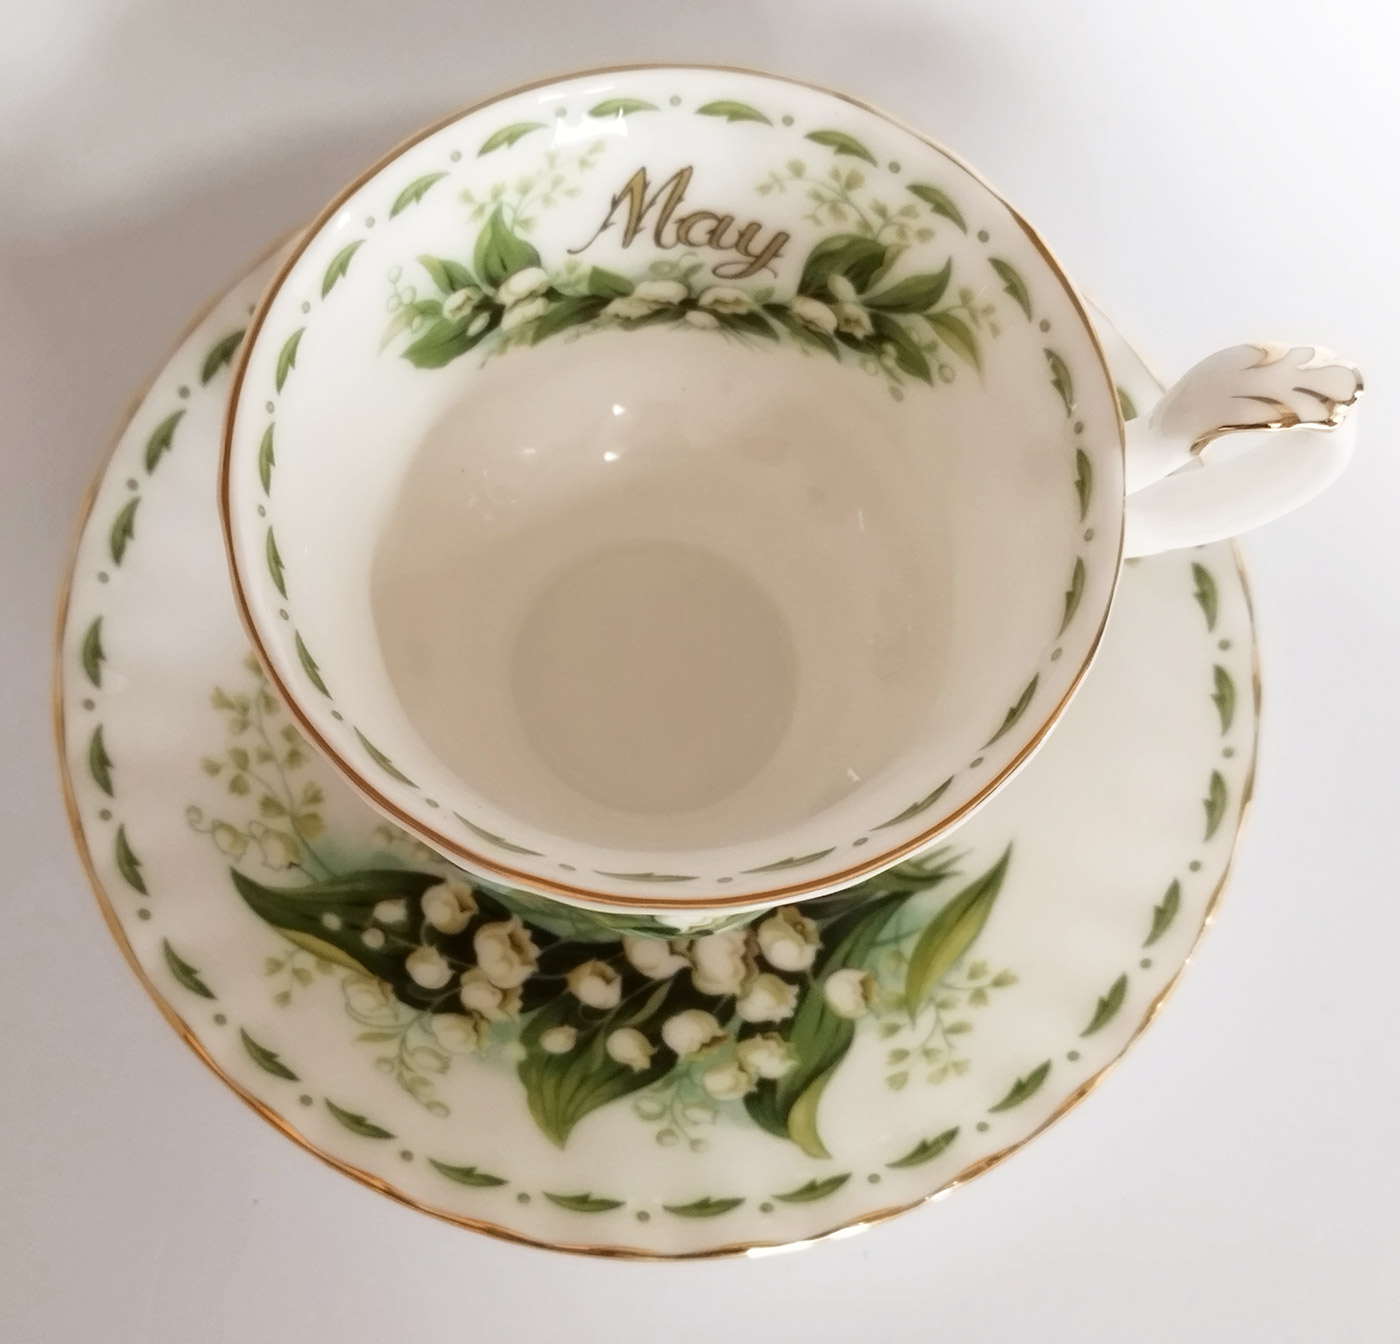 Tazza da tè con piattino Royal Albert collezione Flower of the month mese  di maggio/may